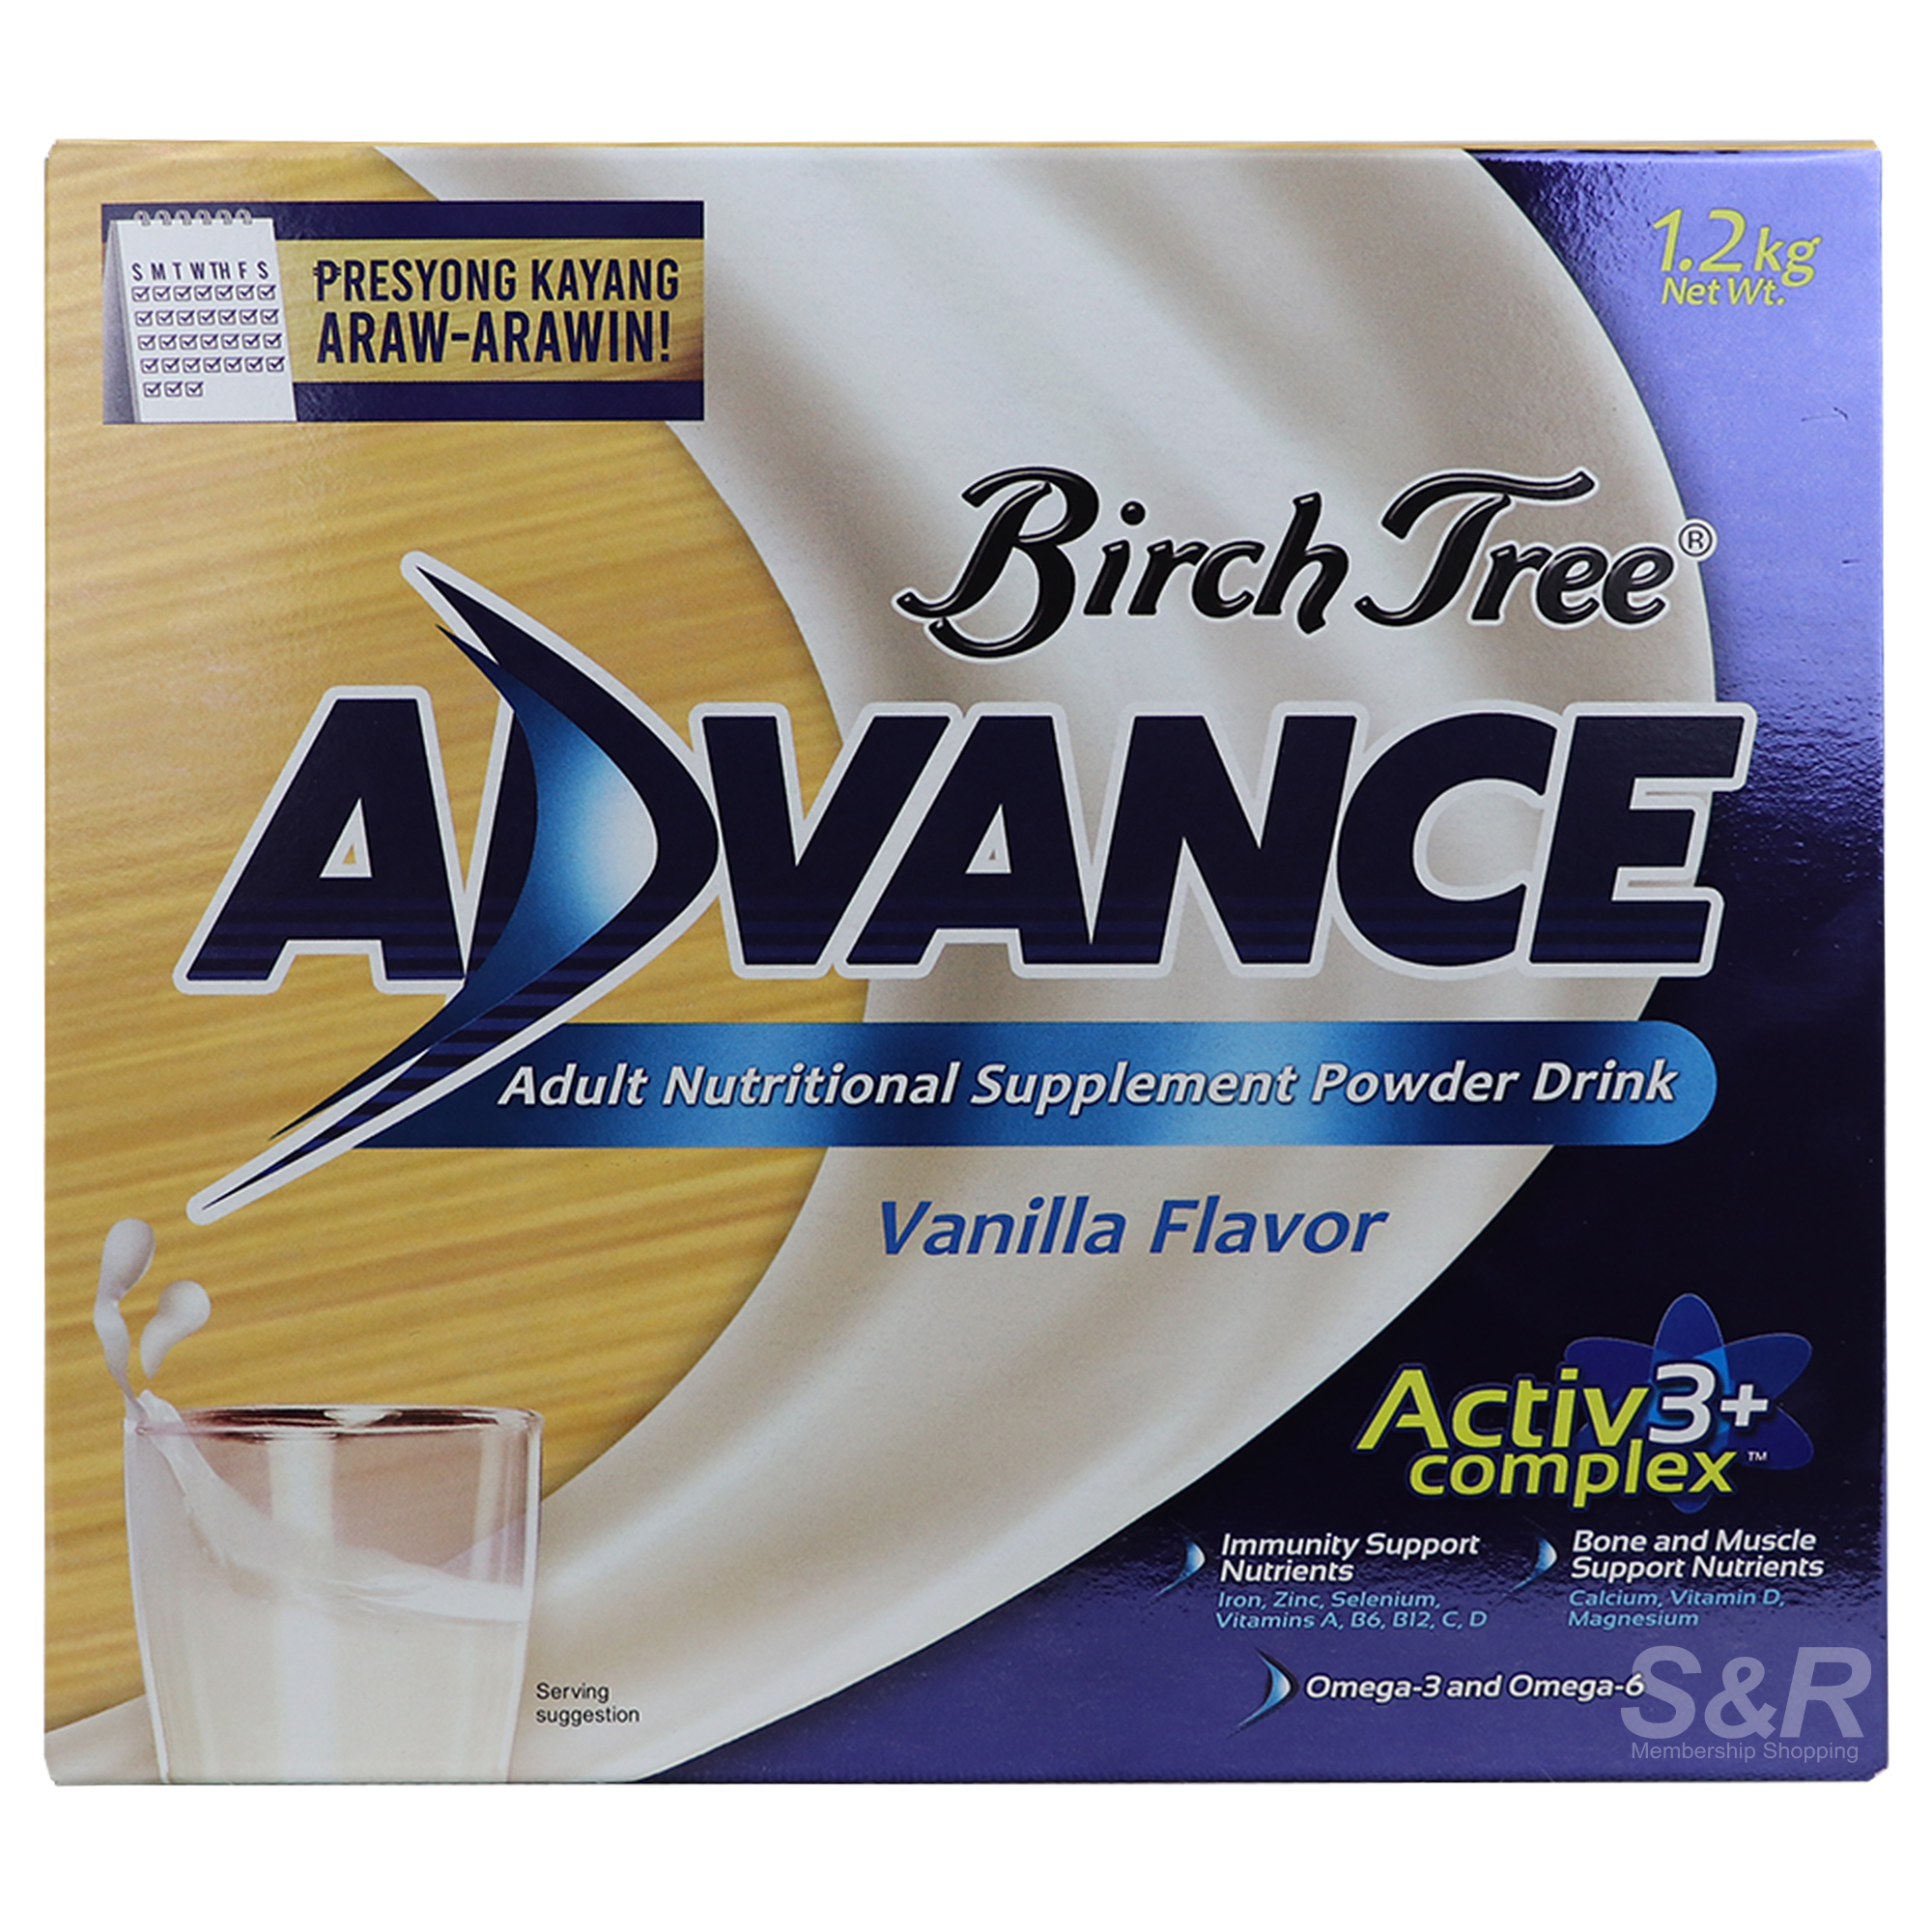 Birch Tree Advance Adult Nutritional Supplement Powder Drink Vanilla Flavor 1.2kg